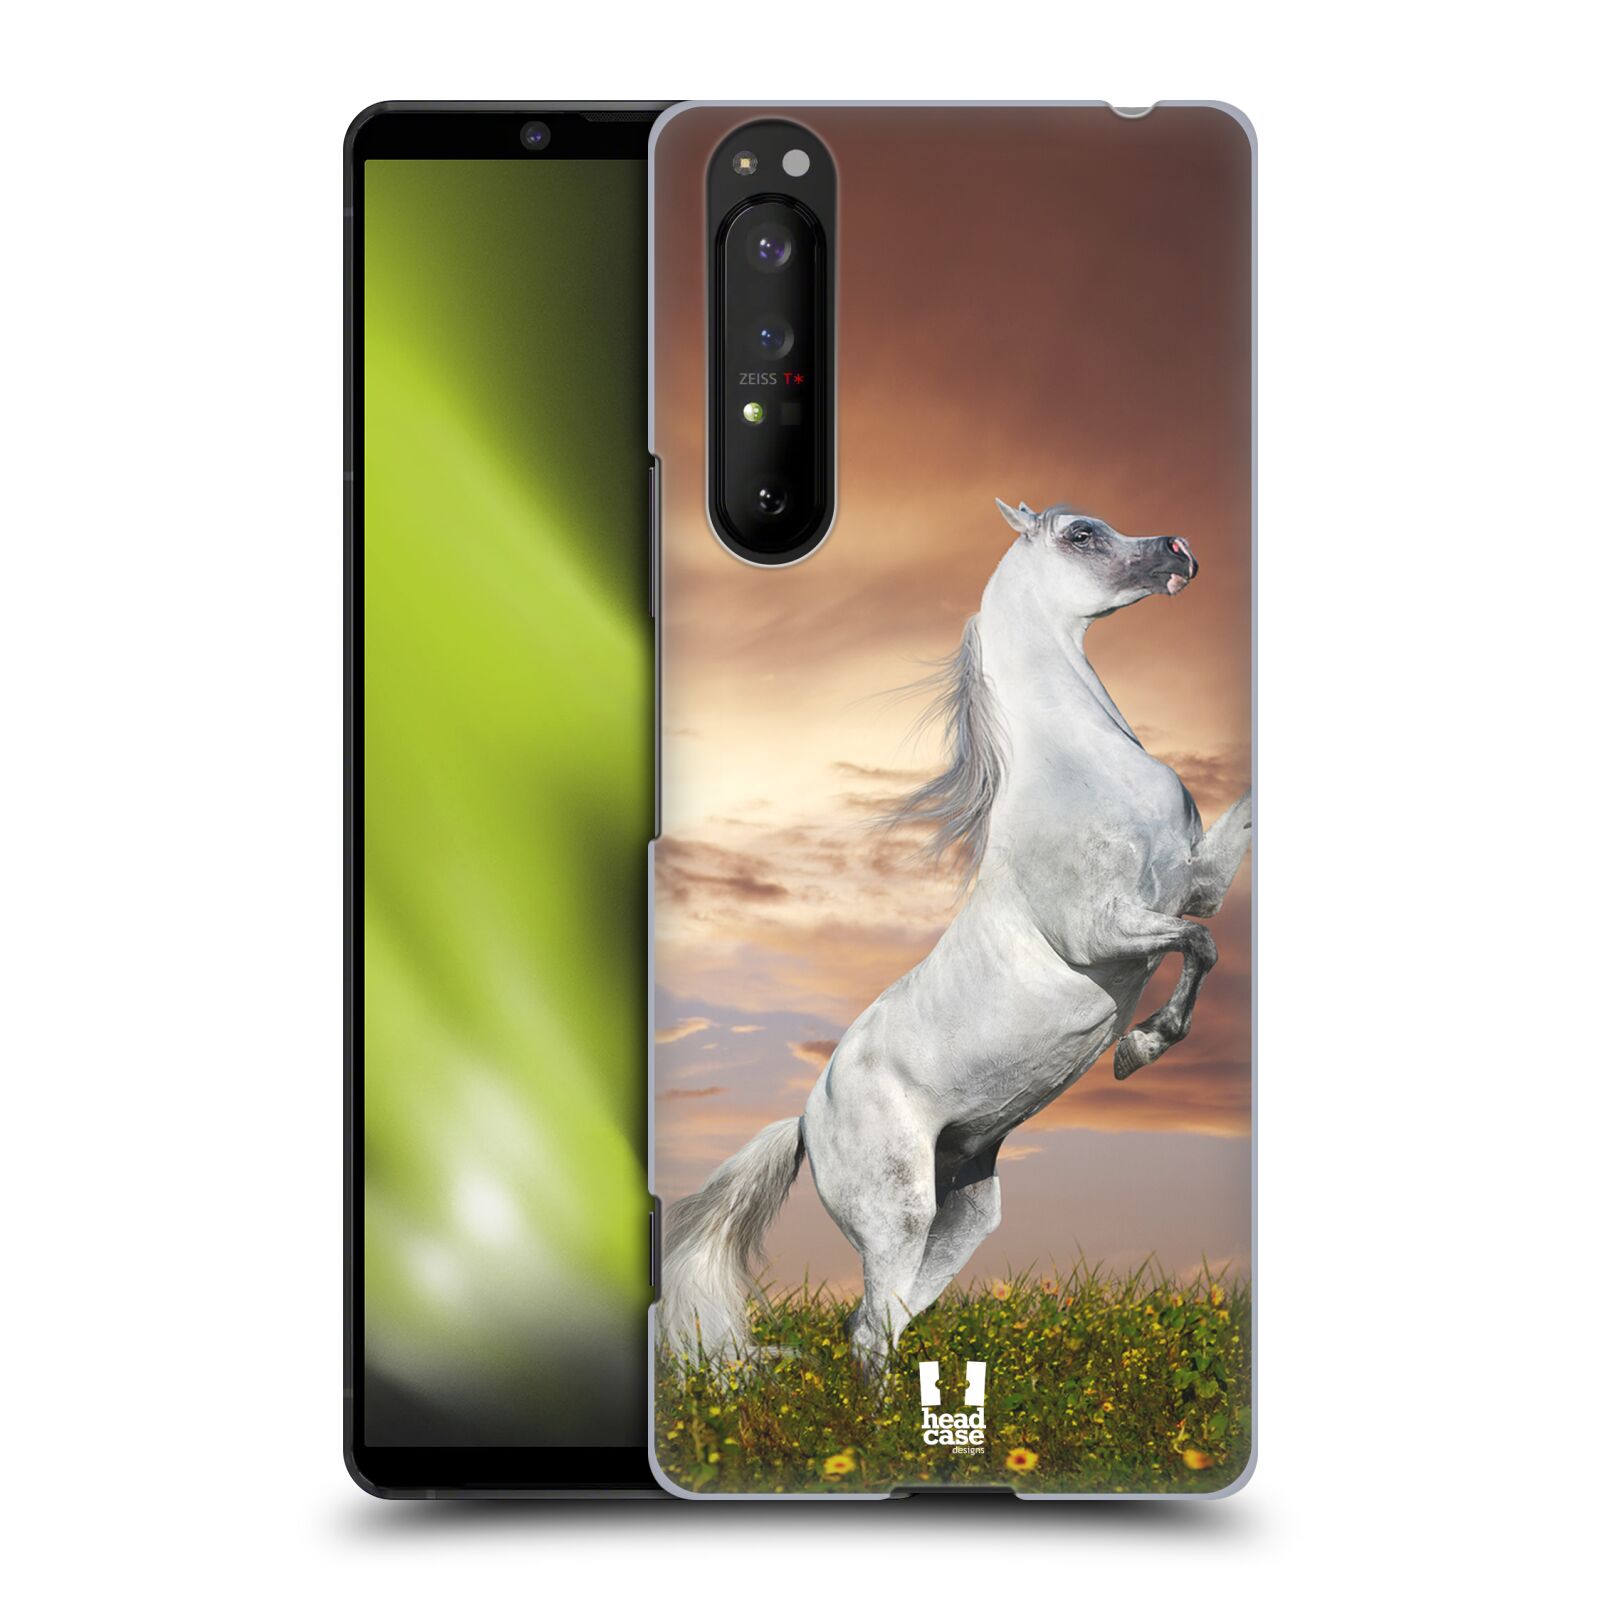 Zadní obal pro mobil Sony Xperia 1 II - HEAD CASE - Svět zvířat divoký kůň